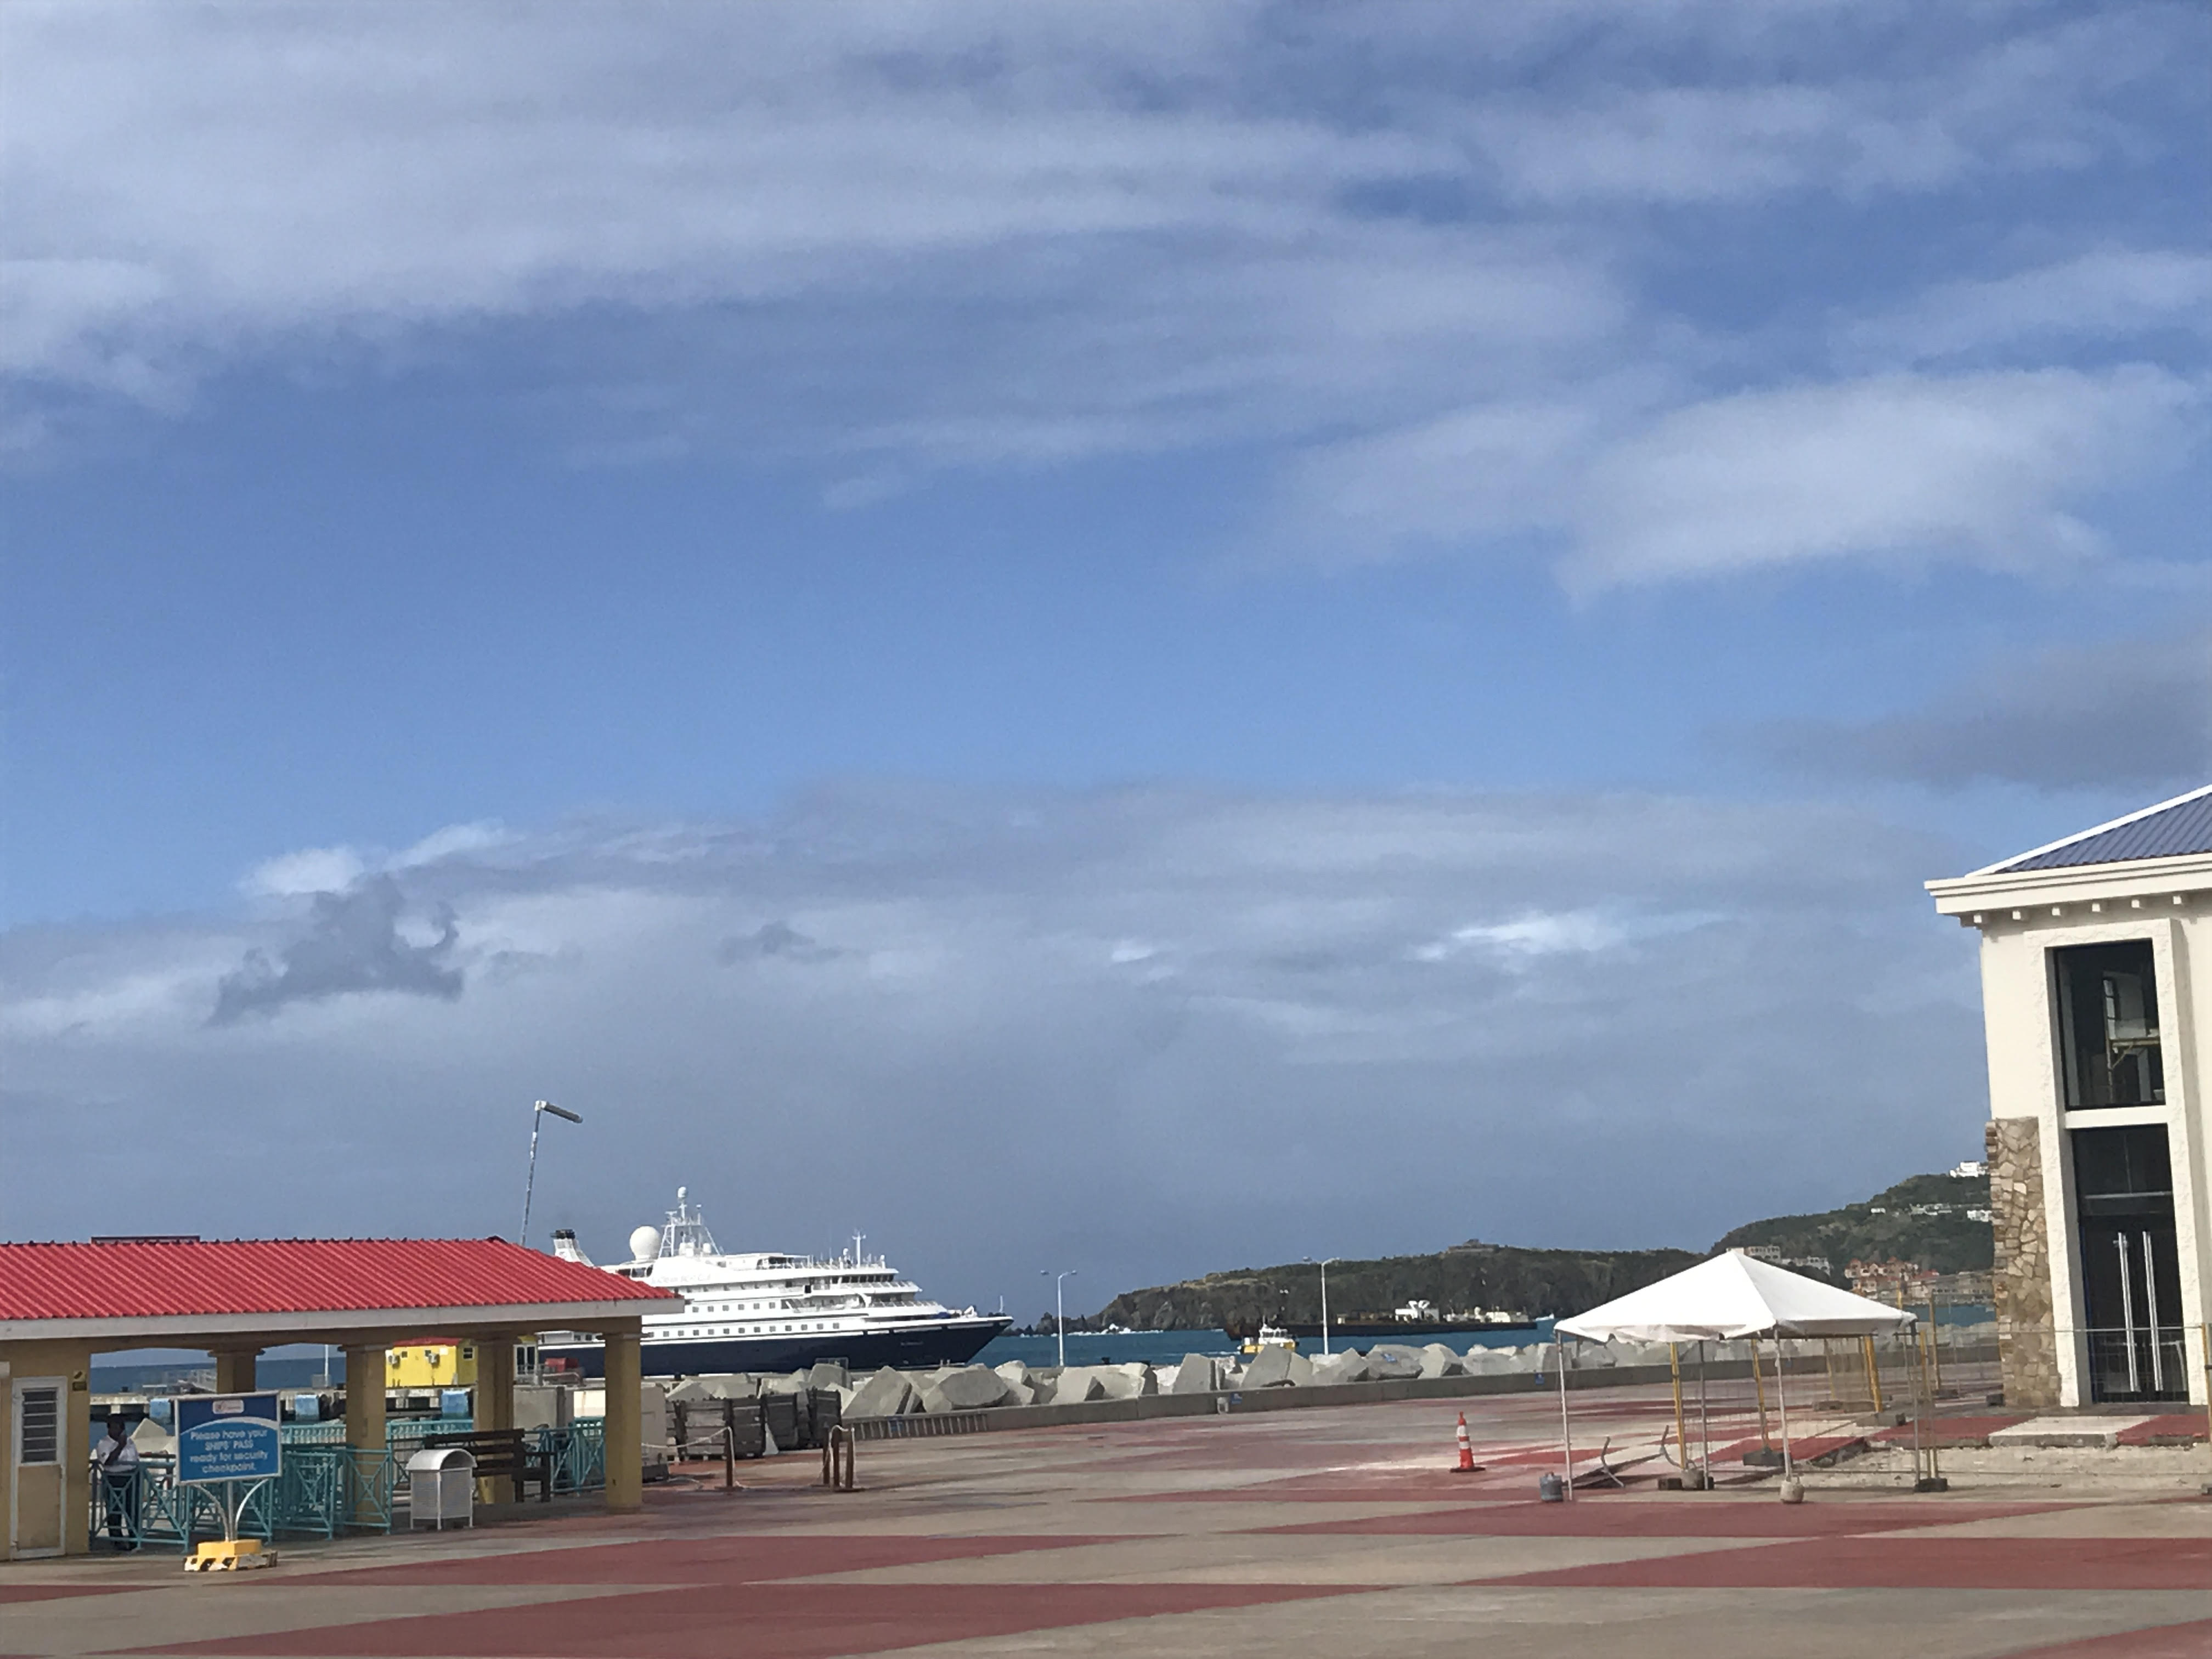 SeaDream 1 in port St. Maarten